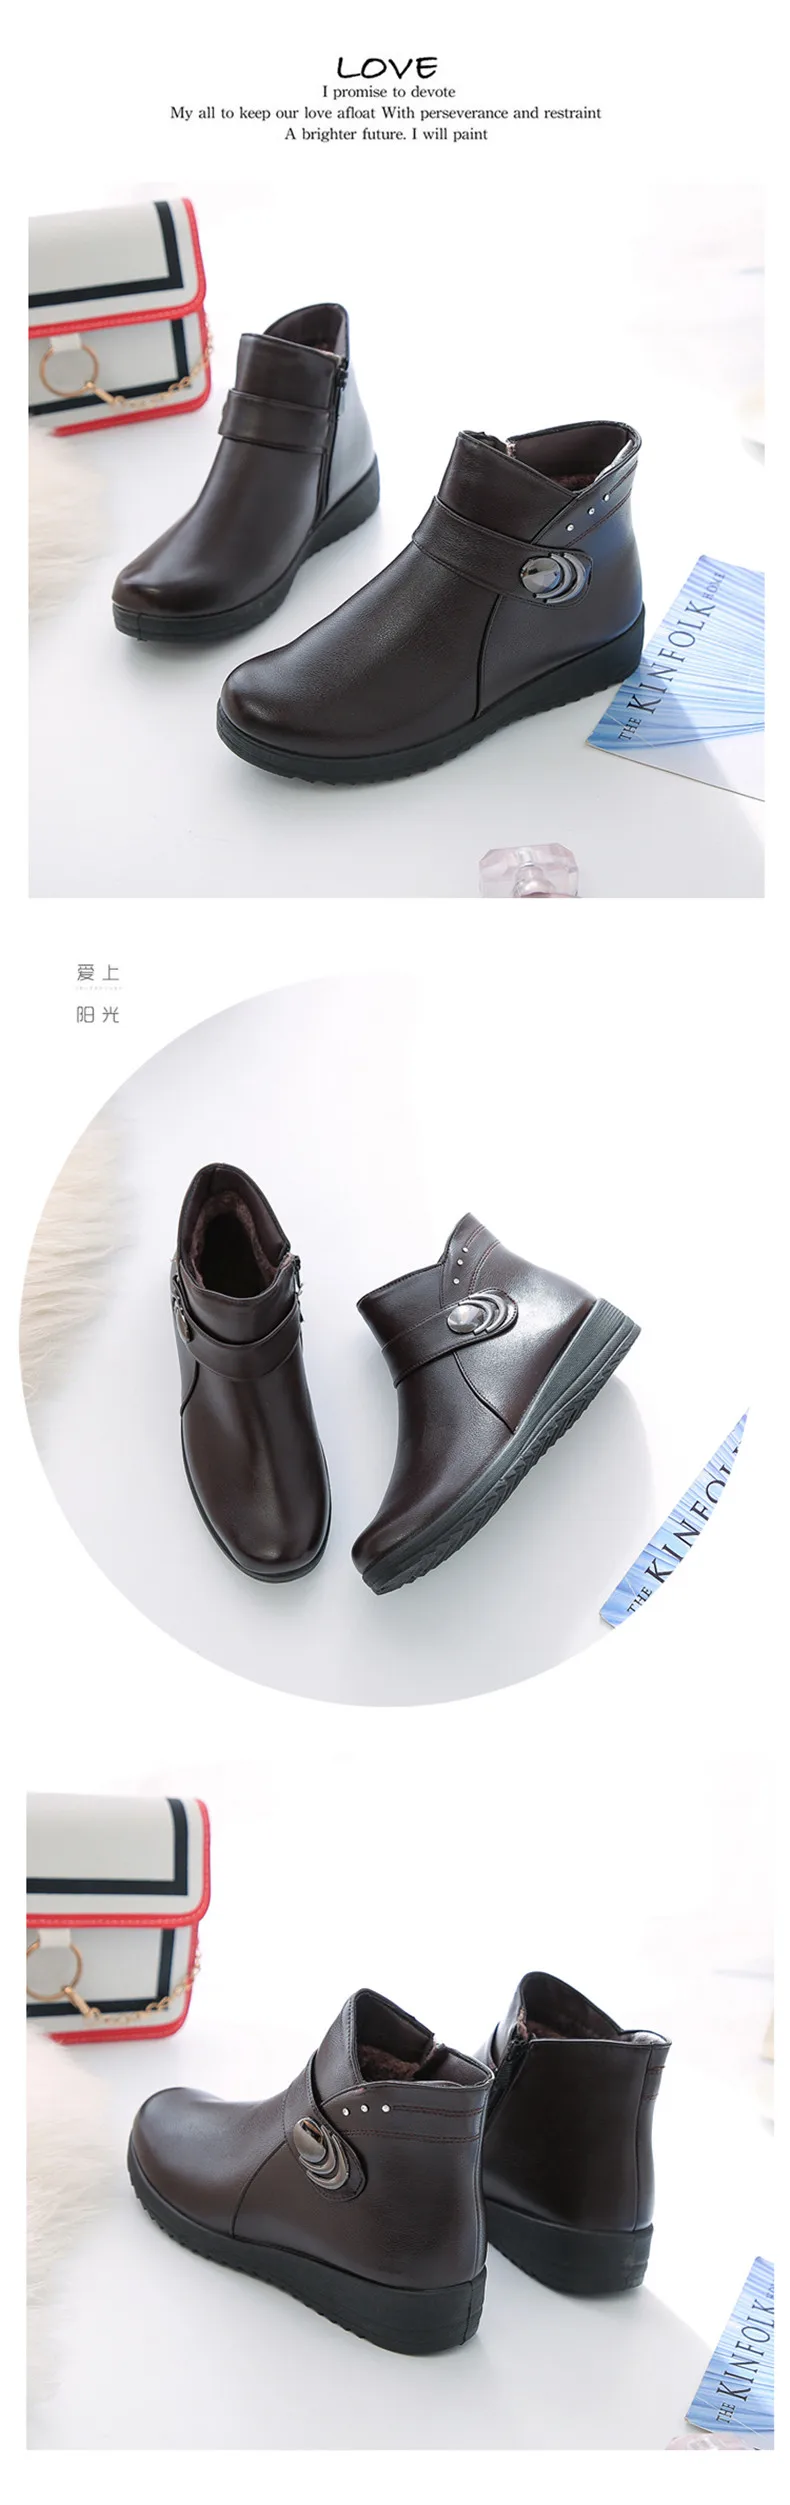 ERNESTNM/новые женские зимние ботинки теплые водонепроницаемые ботильоны из спилка обувь на толстой подошве женская обувь на плоской подошве; Botas Mujer Zapatos